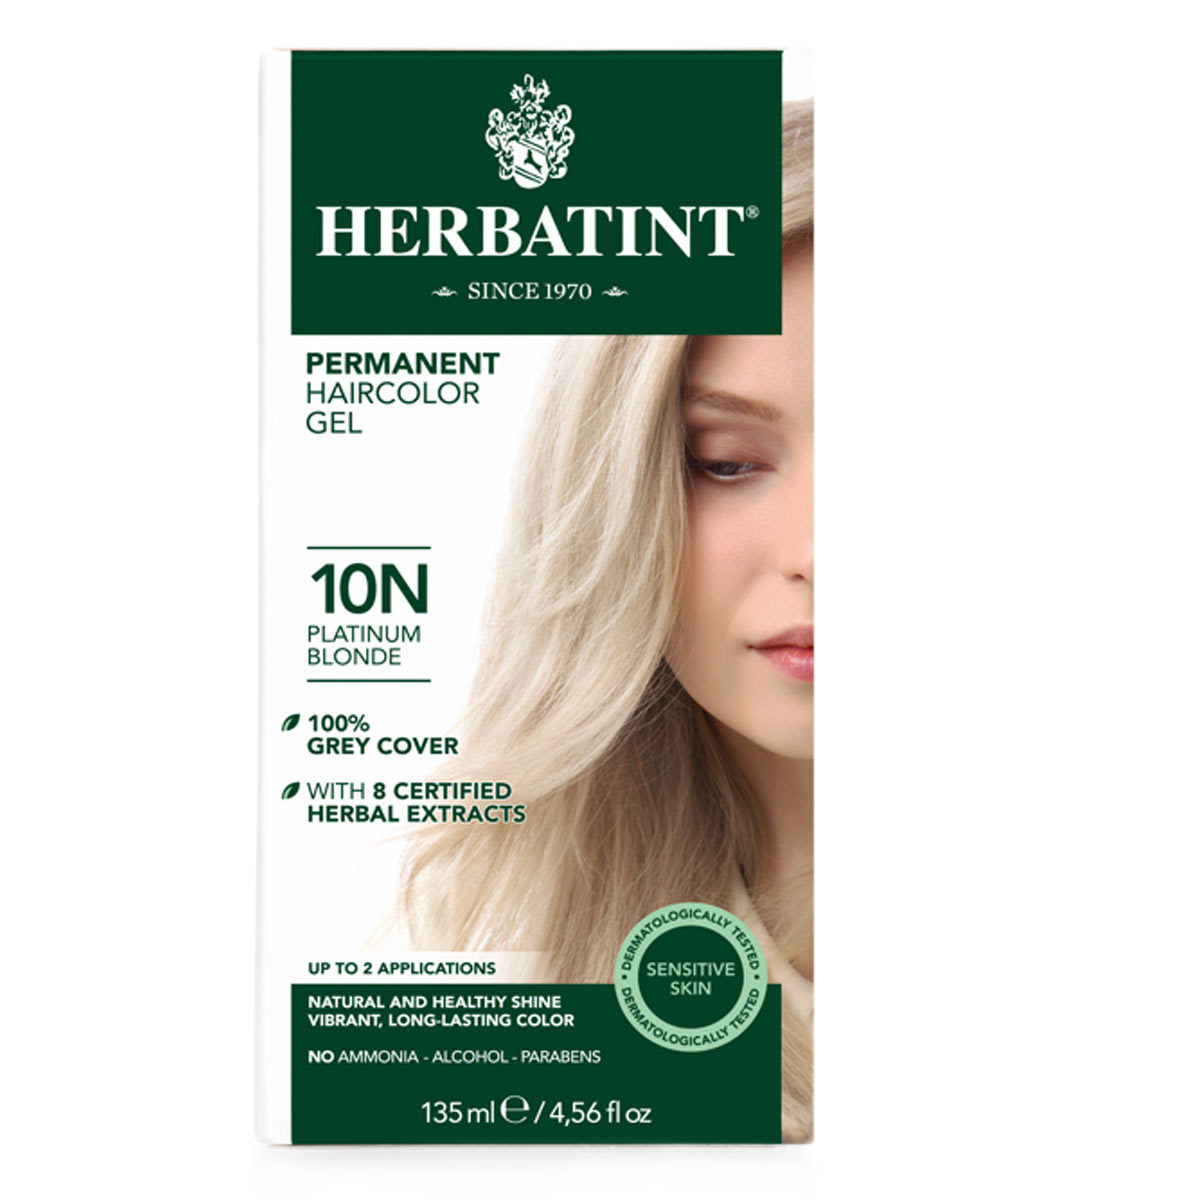 Primary image of 10N Platinum Blonde Permanent Hair Color Gel